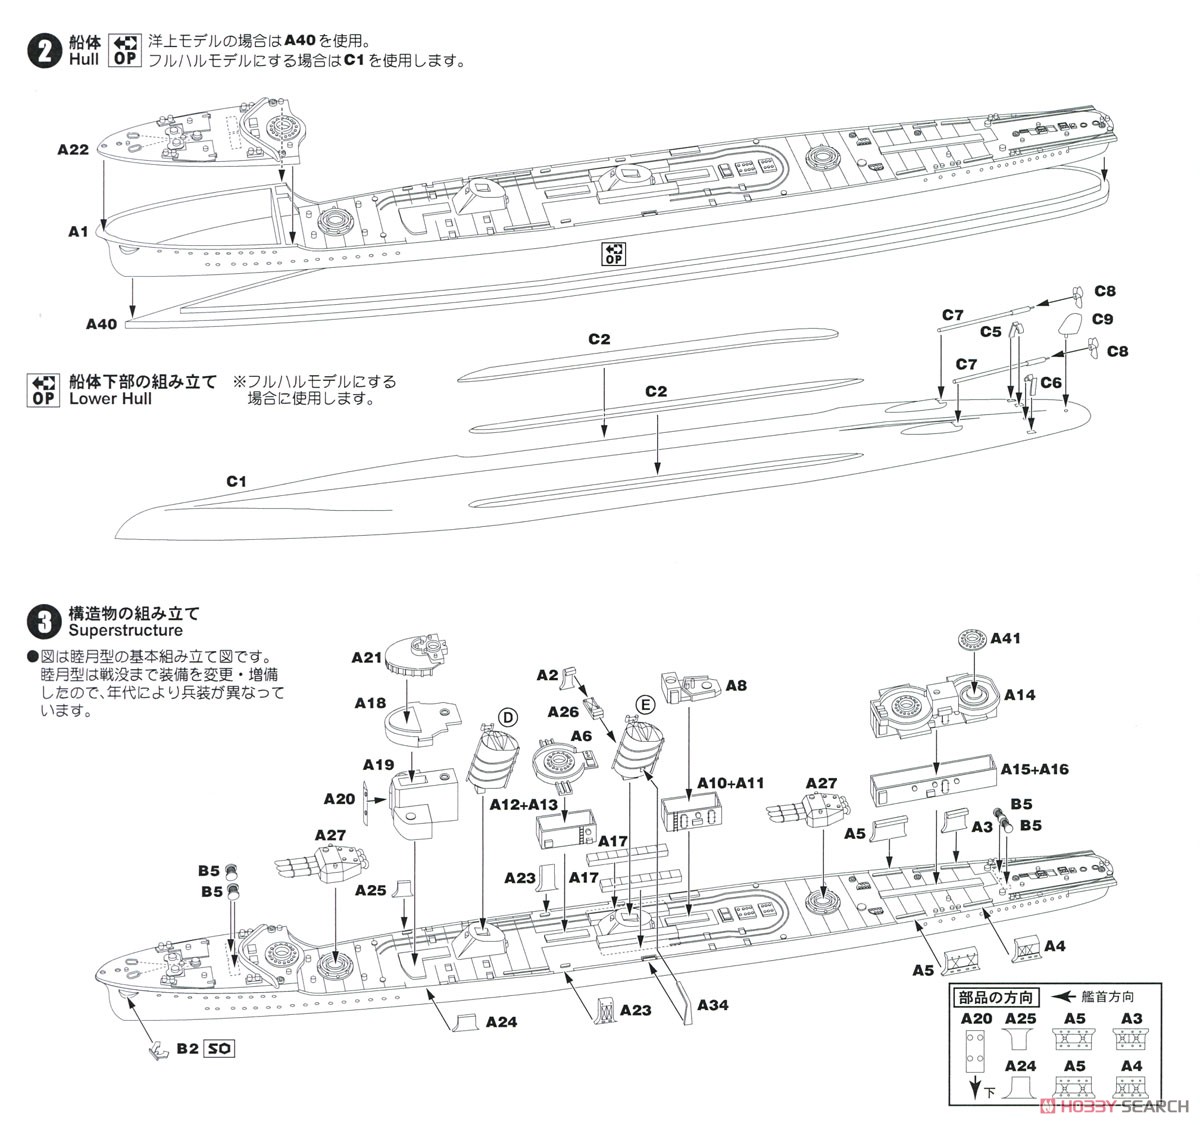 日本海軍睦月型駆逐艦 睦月 エッチングパーツ付き (プラモデル) 設計図2